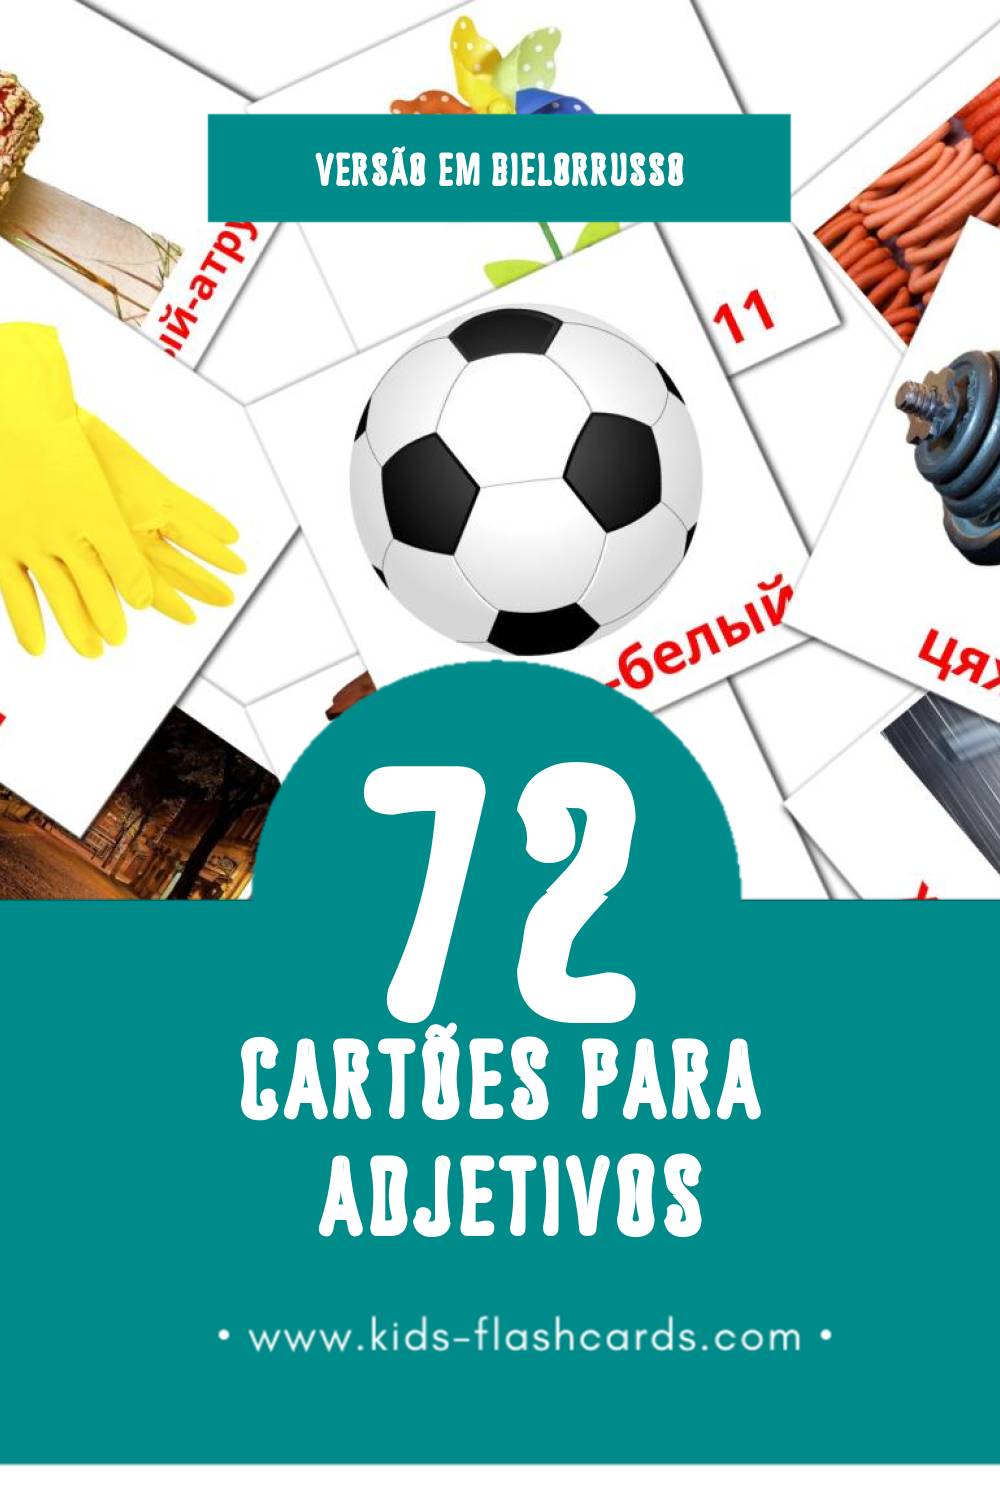 Flashcards de прыметнікі Visuais para Toddlers (72 cartões em Bielorrusso)